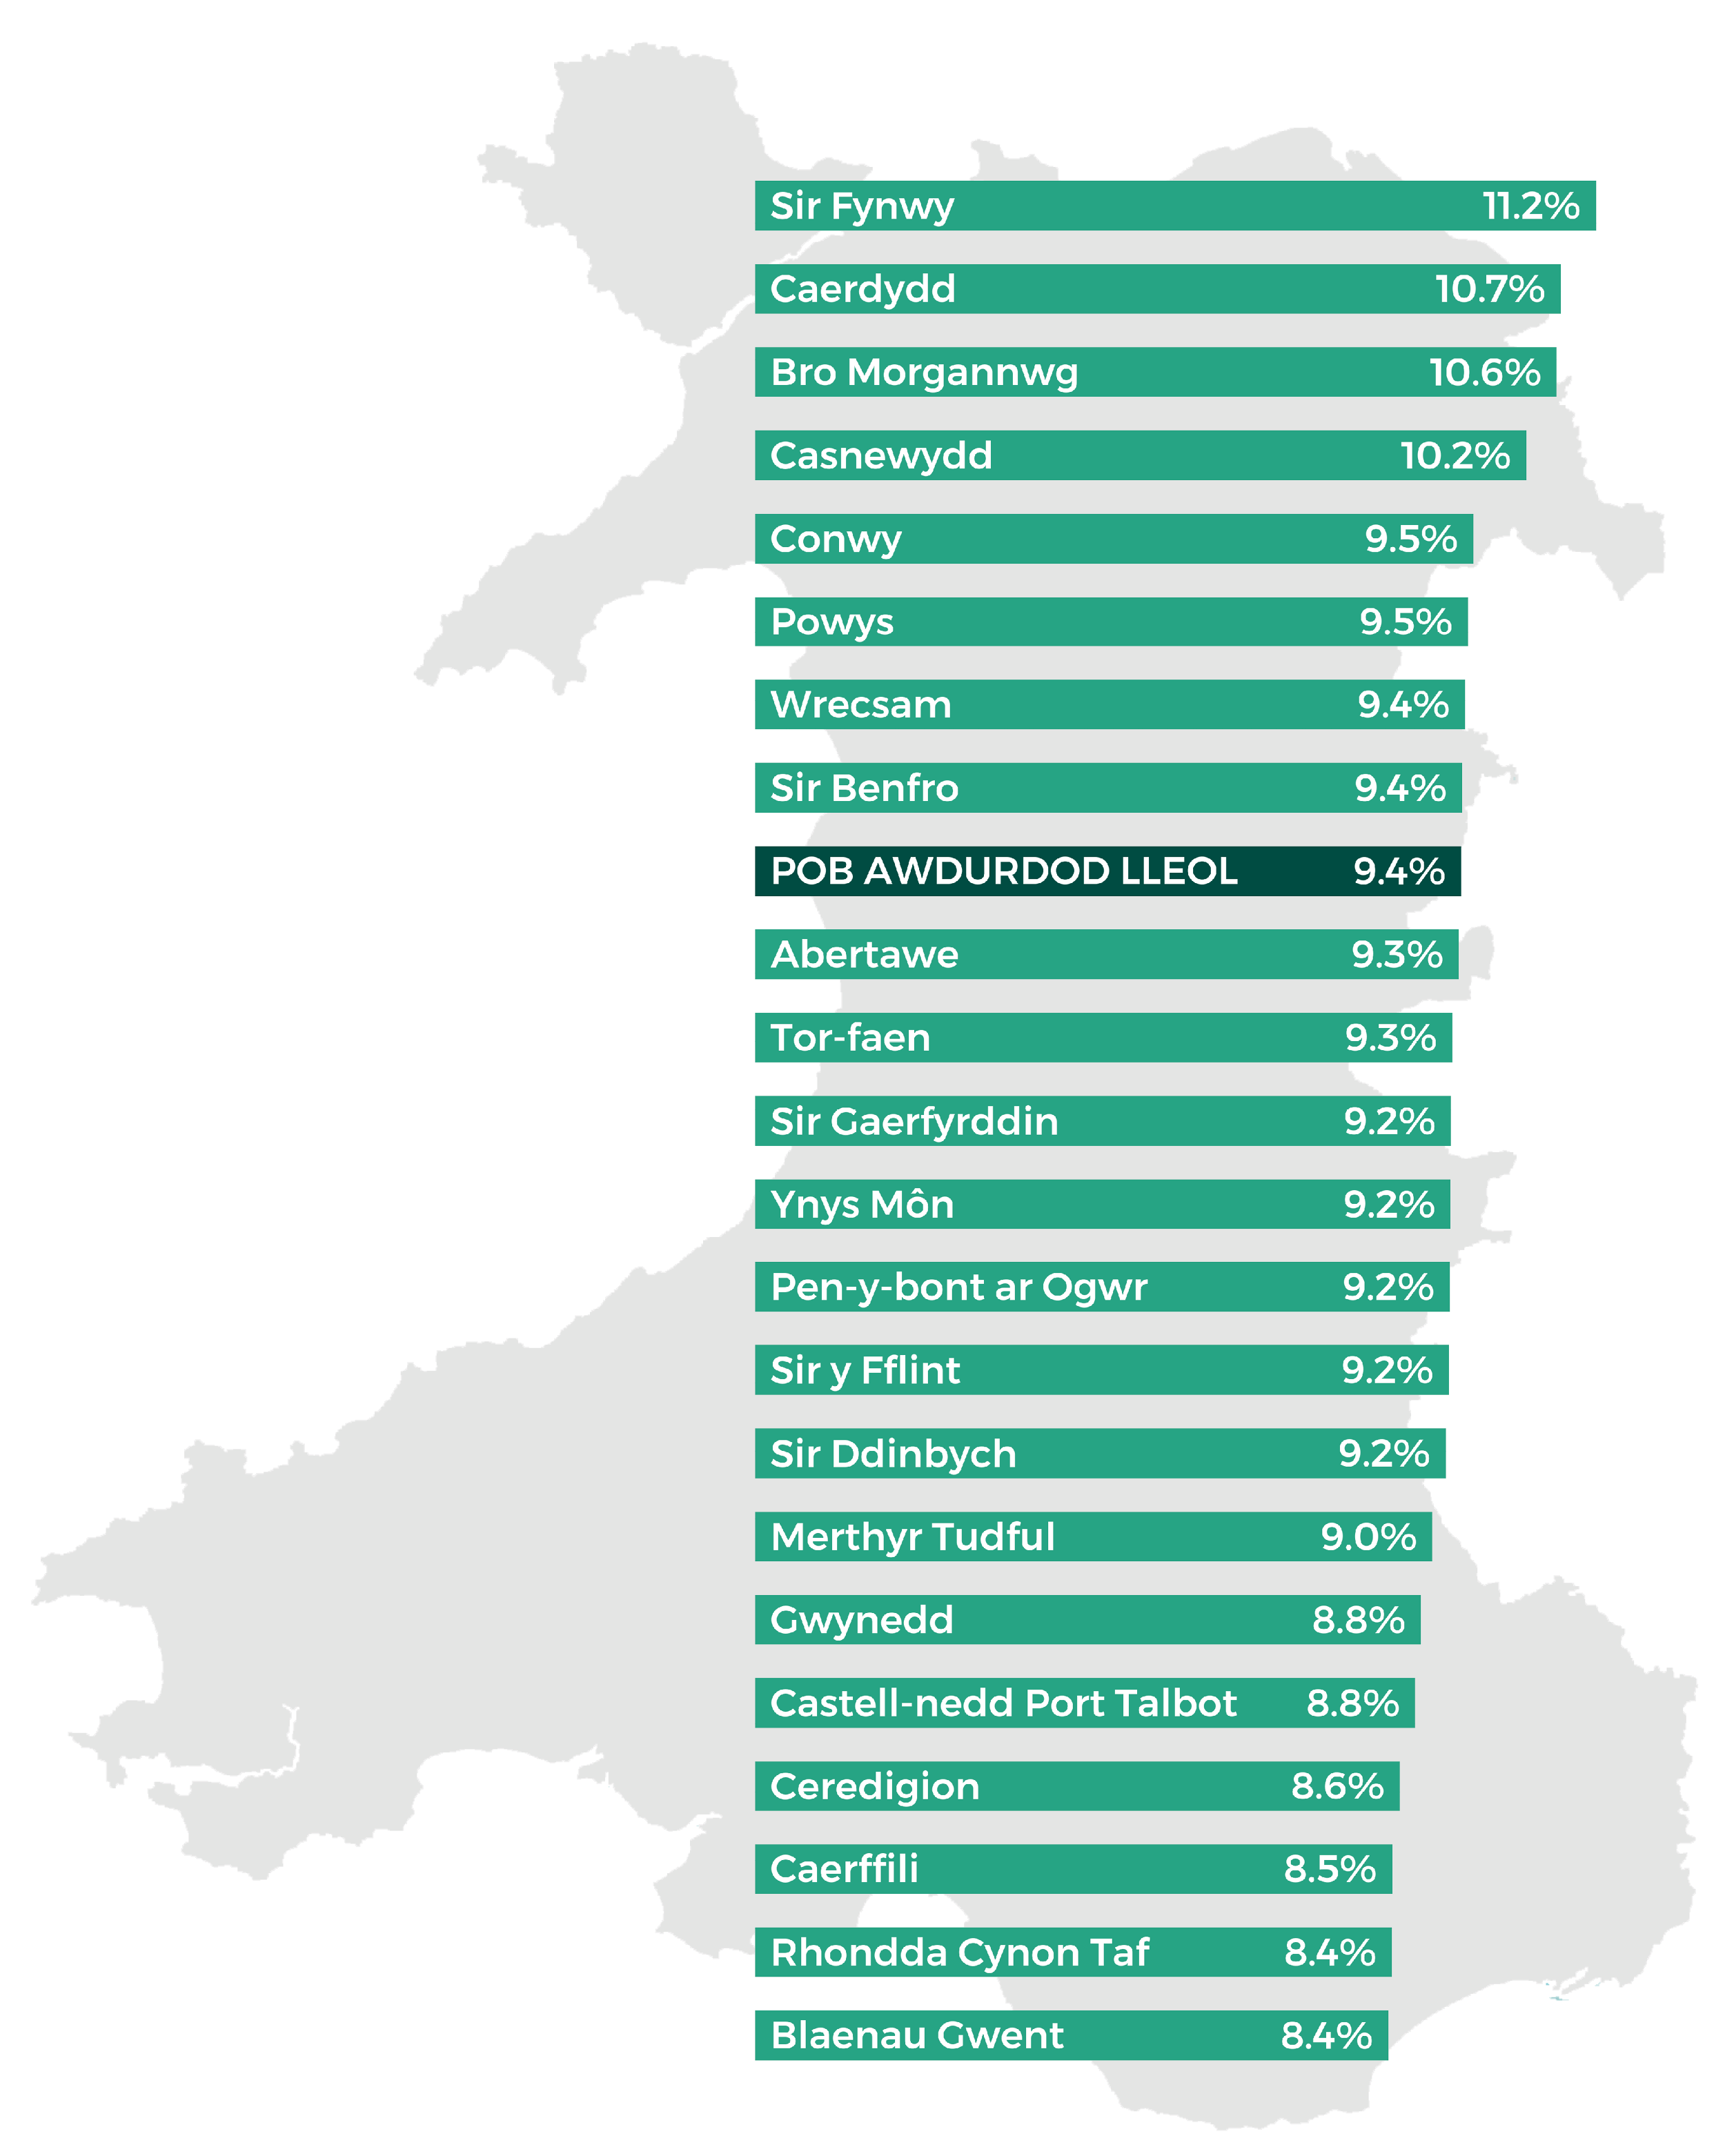 Blaenau Gwent 8.4%, Rhondda Cynon Taf 8.4%, Caerffili 8.5%, Ceredigion 8.6%, Castell-nedd Port Talbot 8.8%, Gwynedd 8.8%, Merthyr Tudful 9.0%, Sir Ddinbych 9.2%, Sir y Fflint 9.2%, Pen-y-bont ar Ogwr 9.2%, Ynys Môn 9.2%, Sir Gaerfyrddin 9.2%, Torfaen 9.3%, Abertawe 9.3%, HOLL AWDURDODAU LLEOL 9.4%, Sir Benfro 9.4%, Wrecsam 9.4%, Powys 9.5%, Conwy 9.5%, Casnewydd 10.2%, Bro Morgannwg 10.6%, Caerdydd 10.7%,  Sir Fynwy 11.2%.